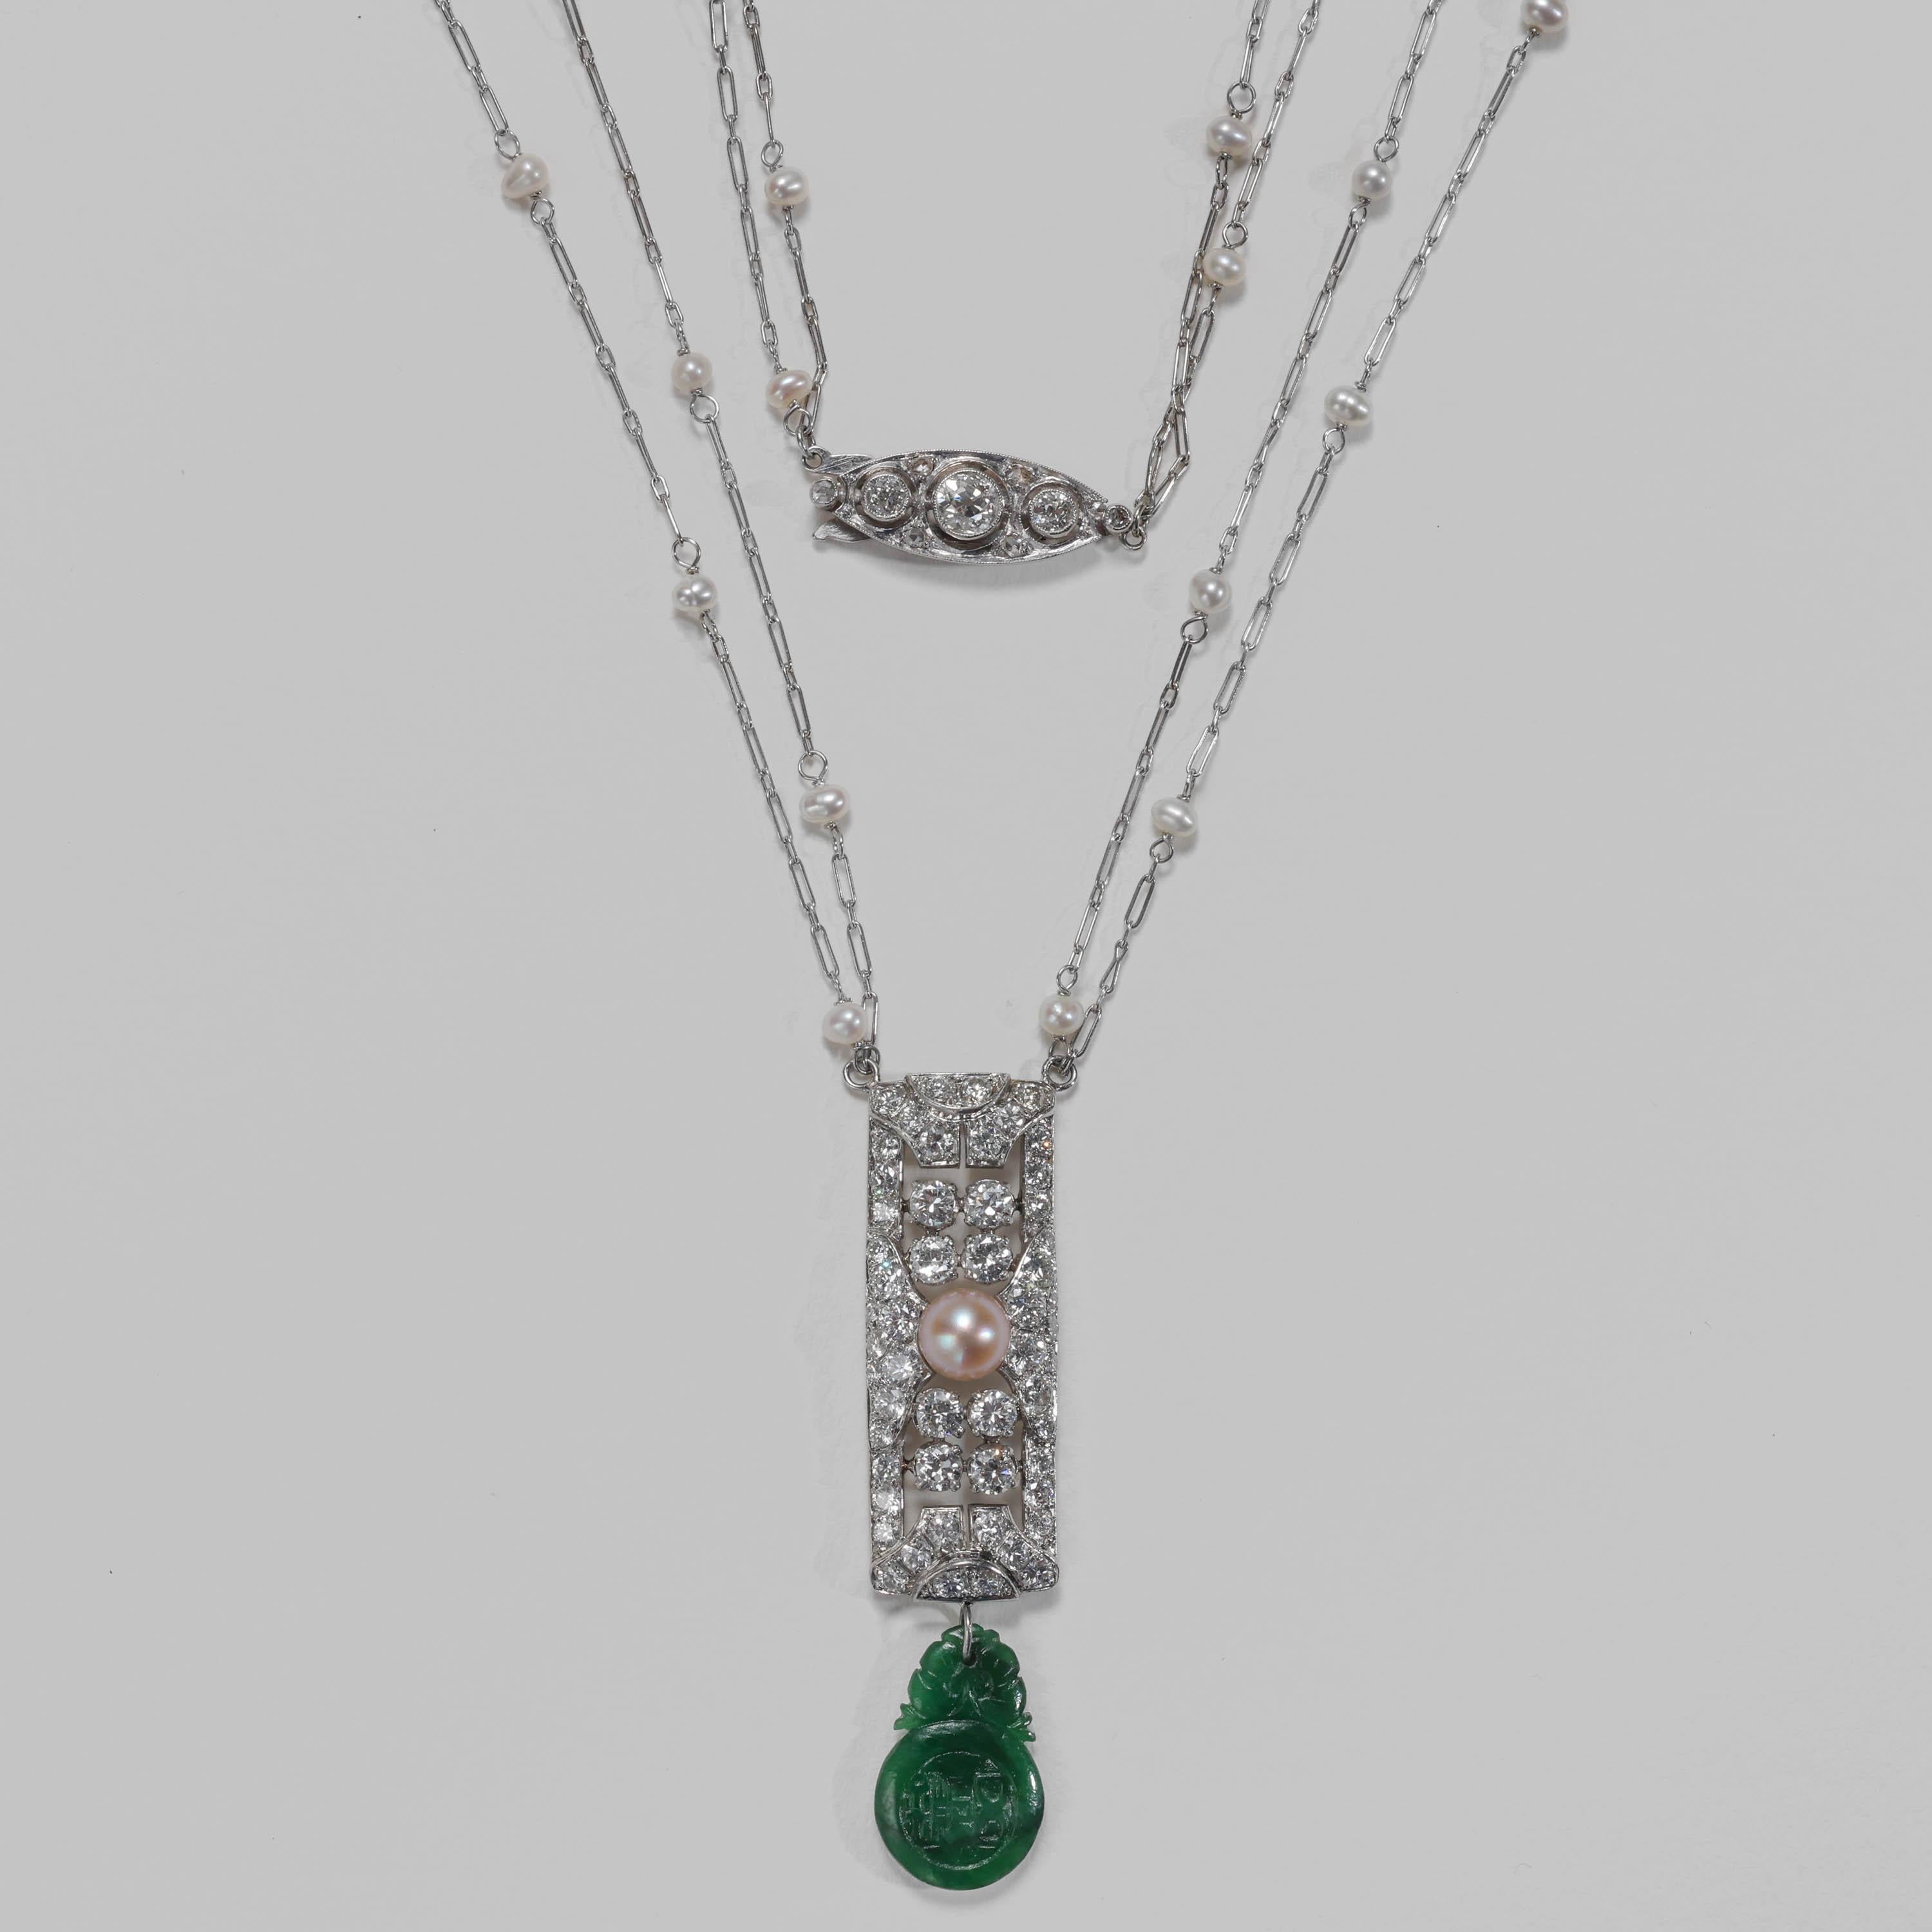 Ce collier-pendentif Art Déco -blaze de diamants anciens- met en valeur deux des gemmes les plus rares et les plus précieuses sur terre : la perle naturelle et la jadeite naturelle et non traitée. Ce bijou Art déco en platine, élégant et permanent,